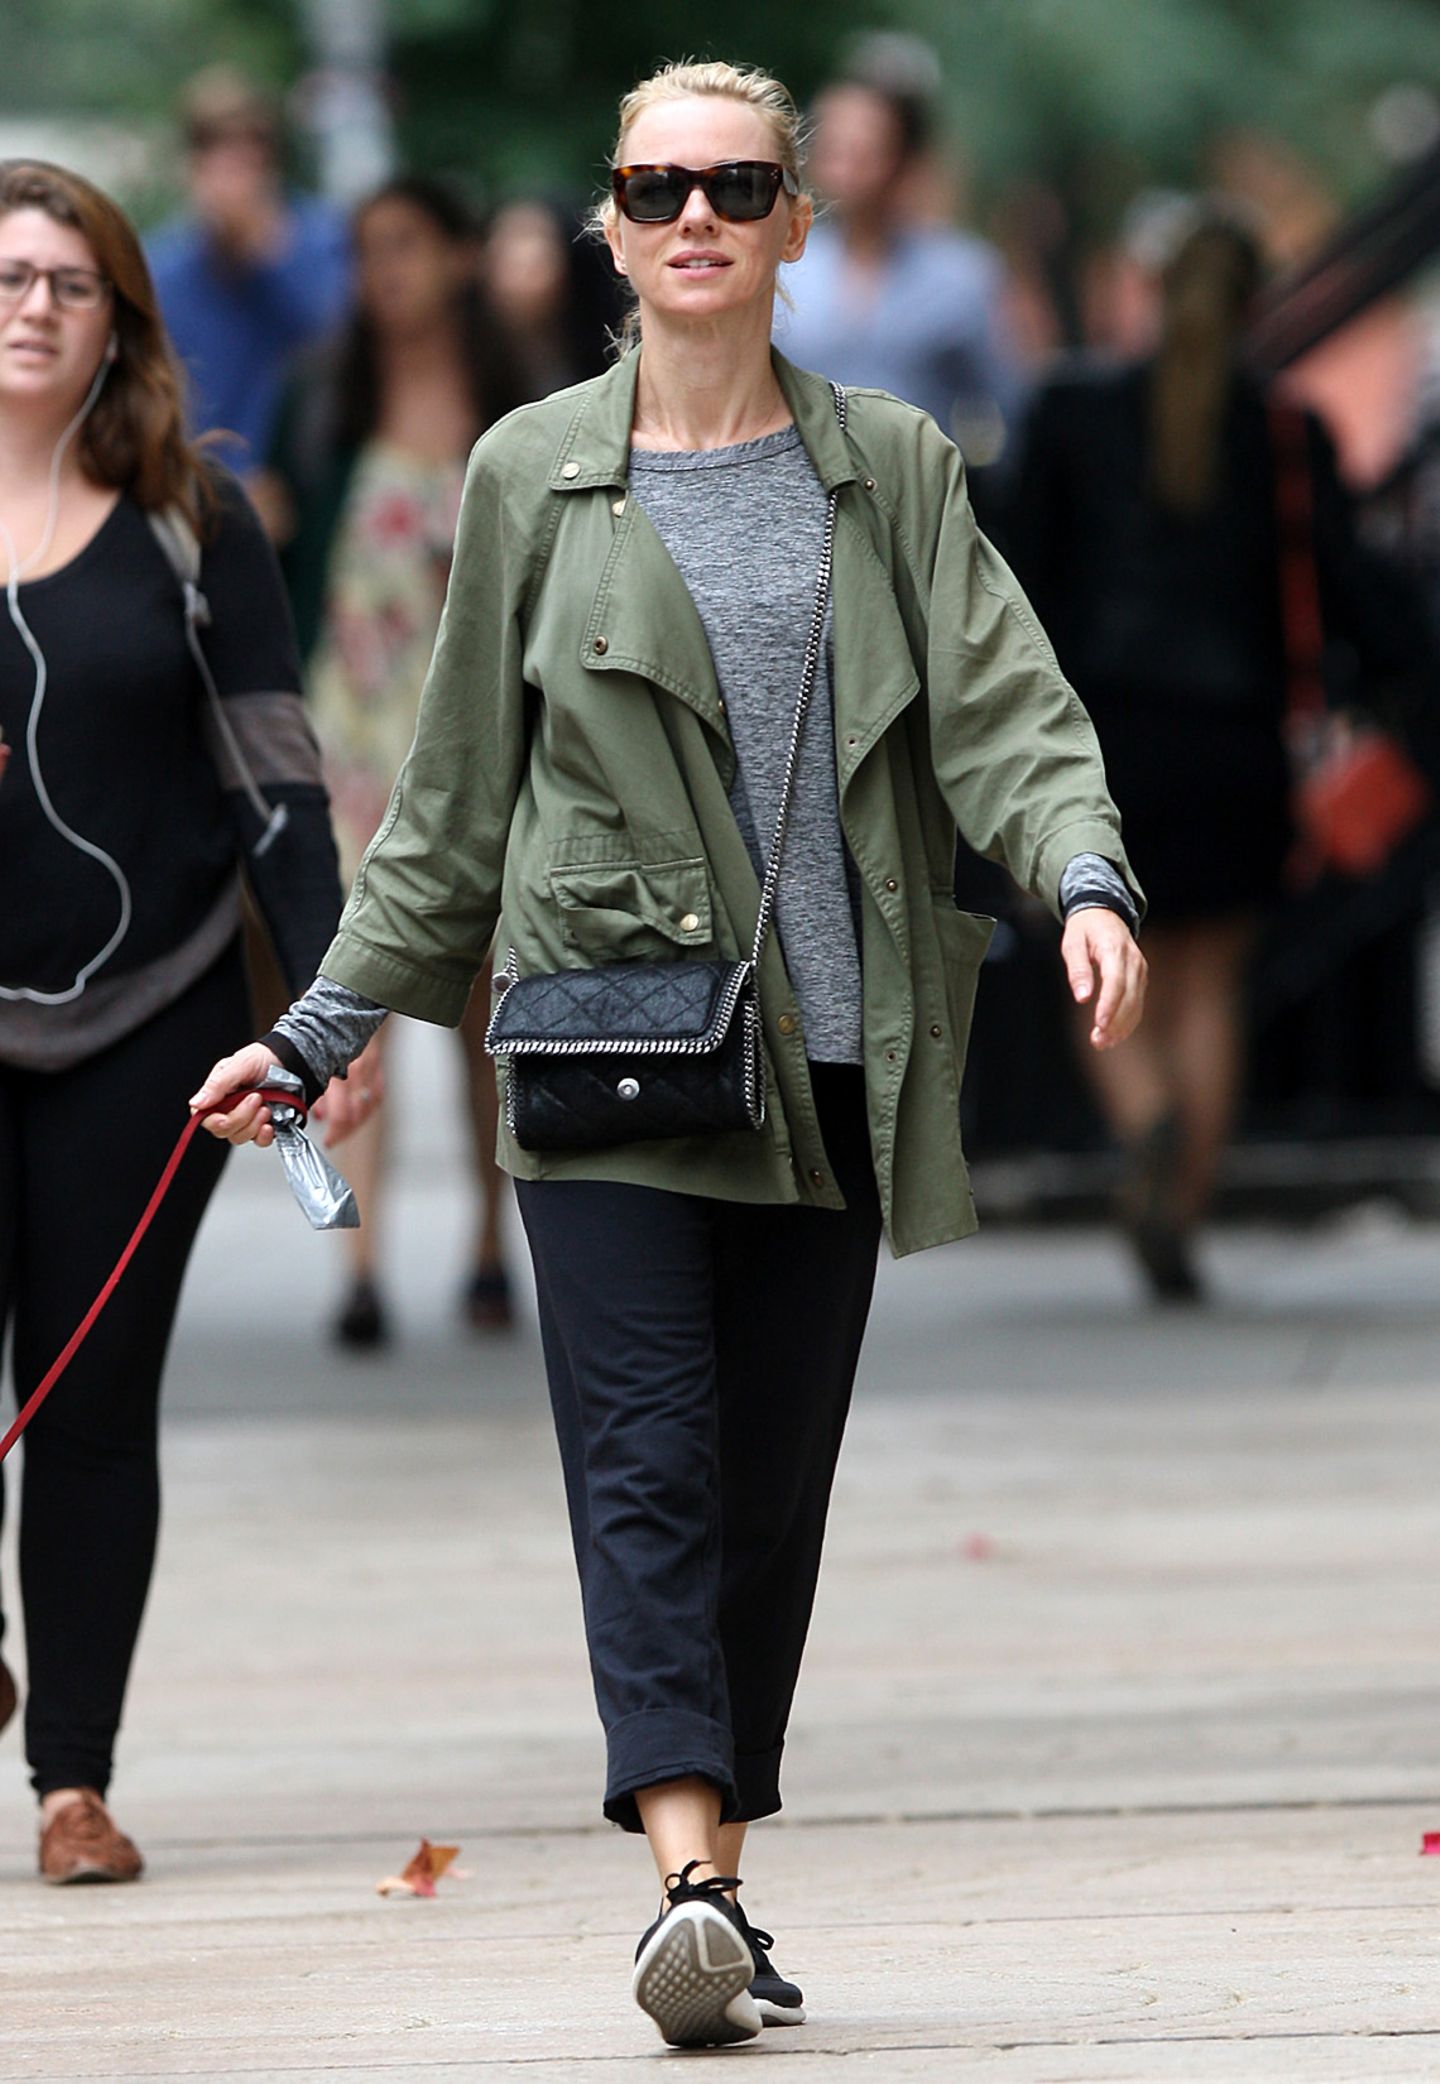 Auch ganz einfache Basics lassen sich im Handumdrehen in einen coolen Look verwandeln. Das weiß auch die britische Schauspielerin Naomi Watts ("King Kong"), die zum Spaziergang mit ihrem Hund ein einfaches, meliertes Shirt, eine marineblaue Stoffhose und einen Parker wählt. Dazu trägt die 46-Jährige ein Paar Nikes und eine edle Handtasche von Stella Mc Cartney.